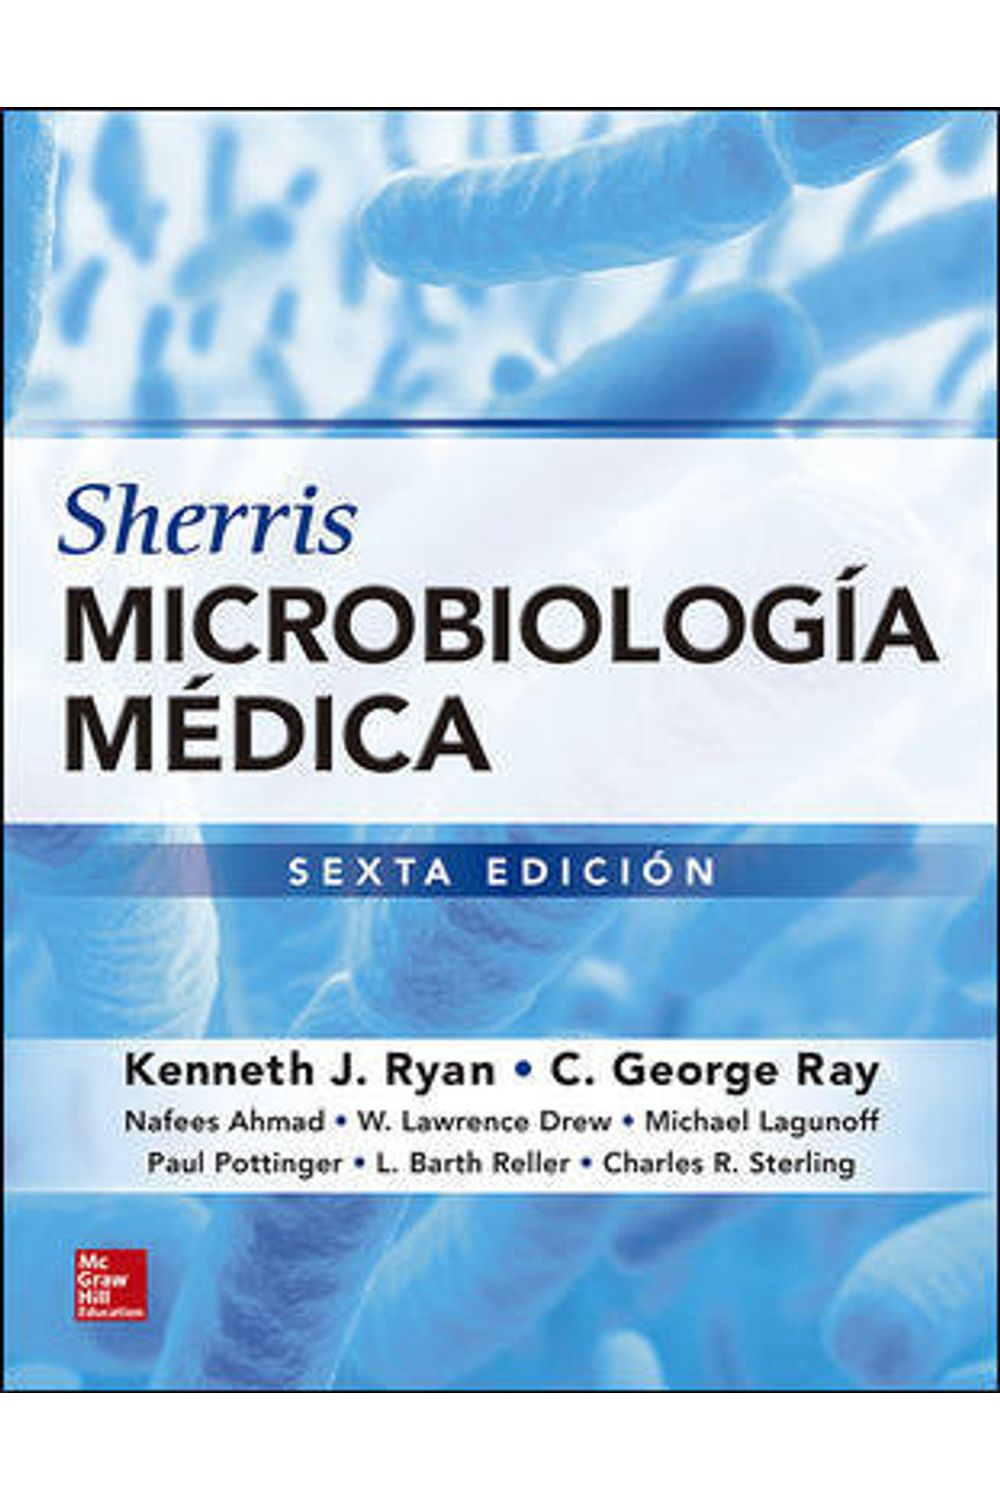 Sherris Microbiologia Medica 6ºEd